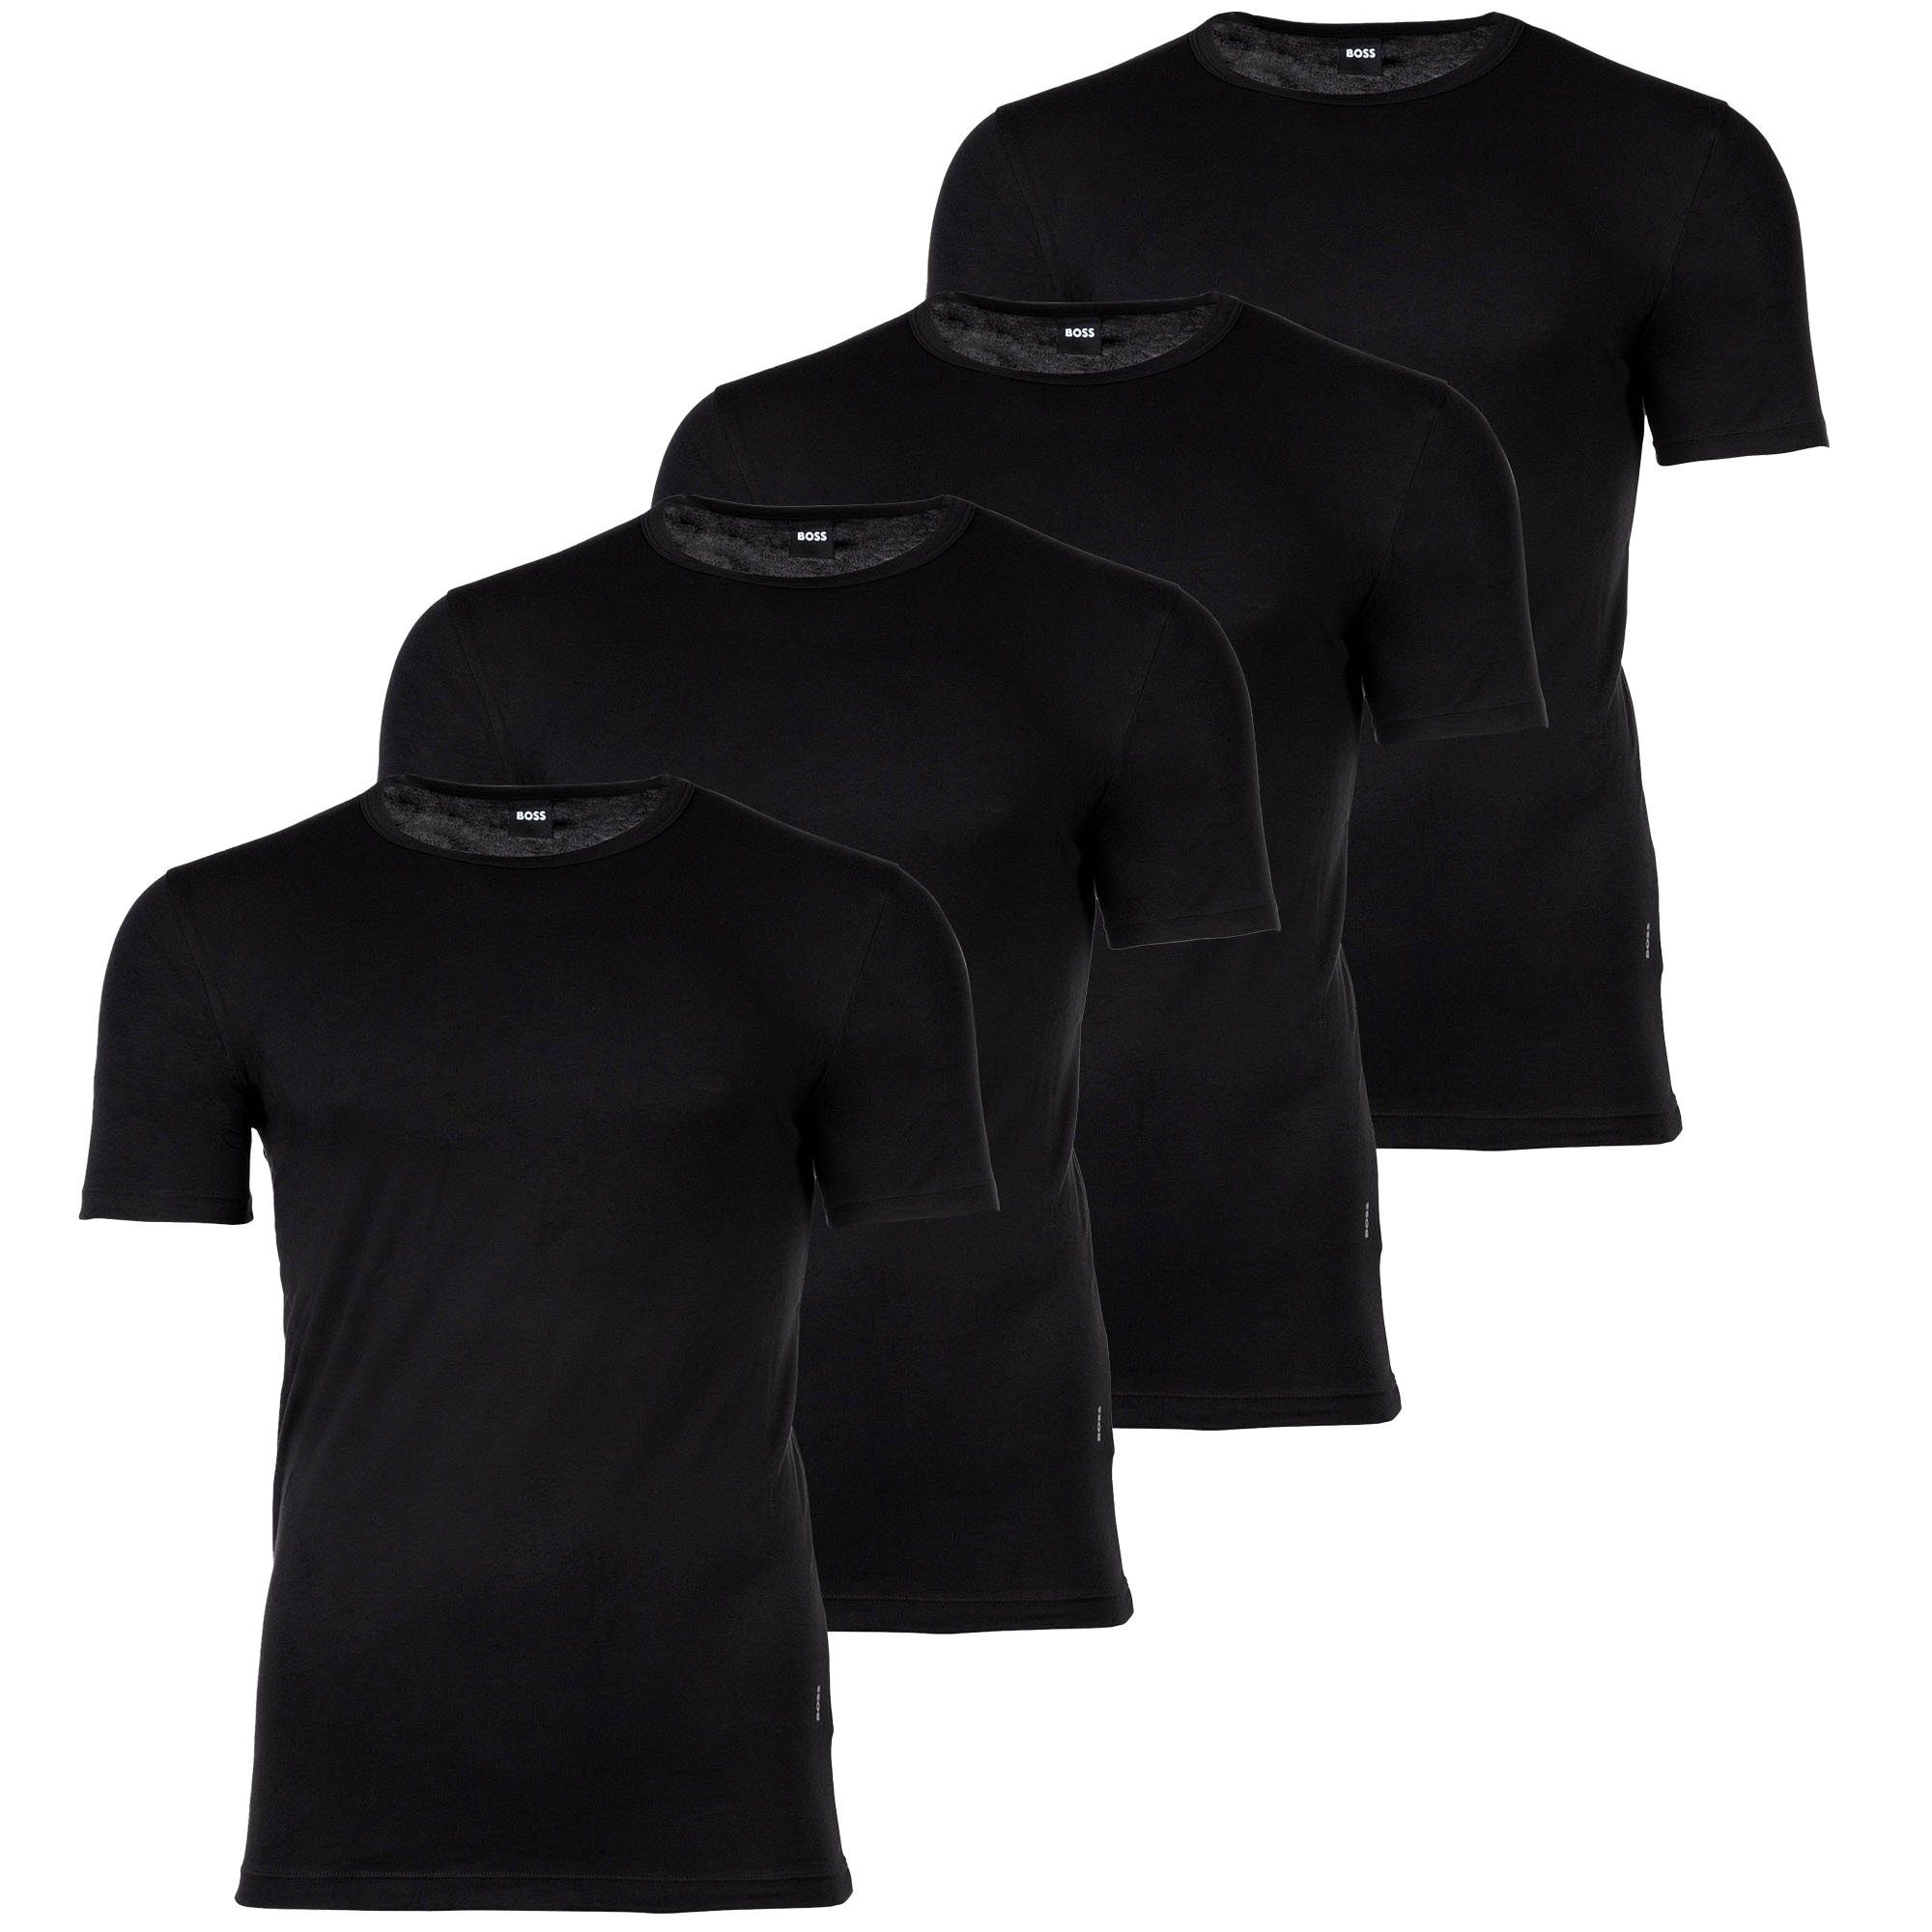 BOSS Unterhemd Herren T-Shirts, 4er Pack - Shirts, Unterhemd Schwarz